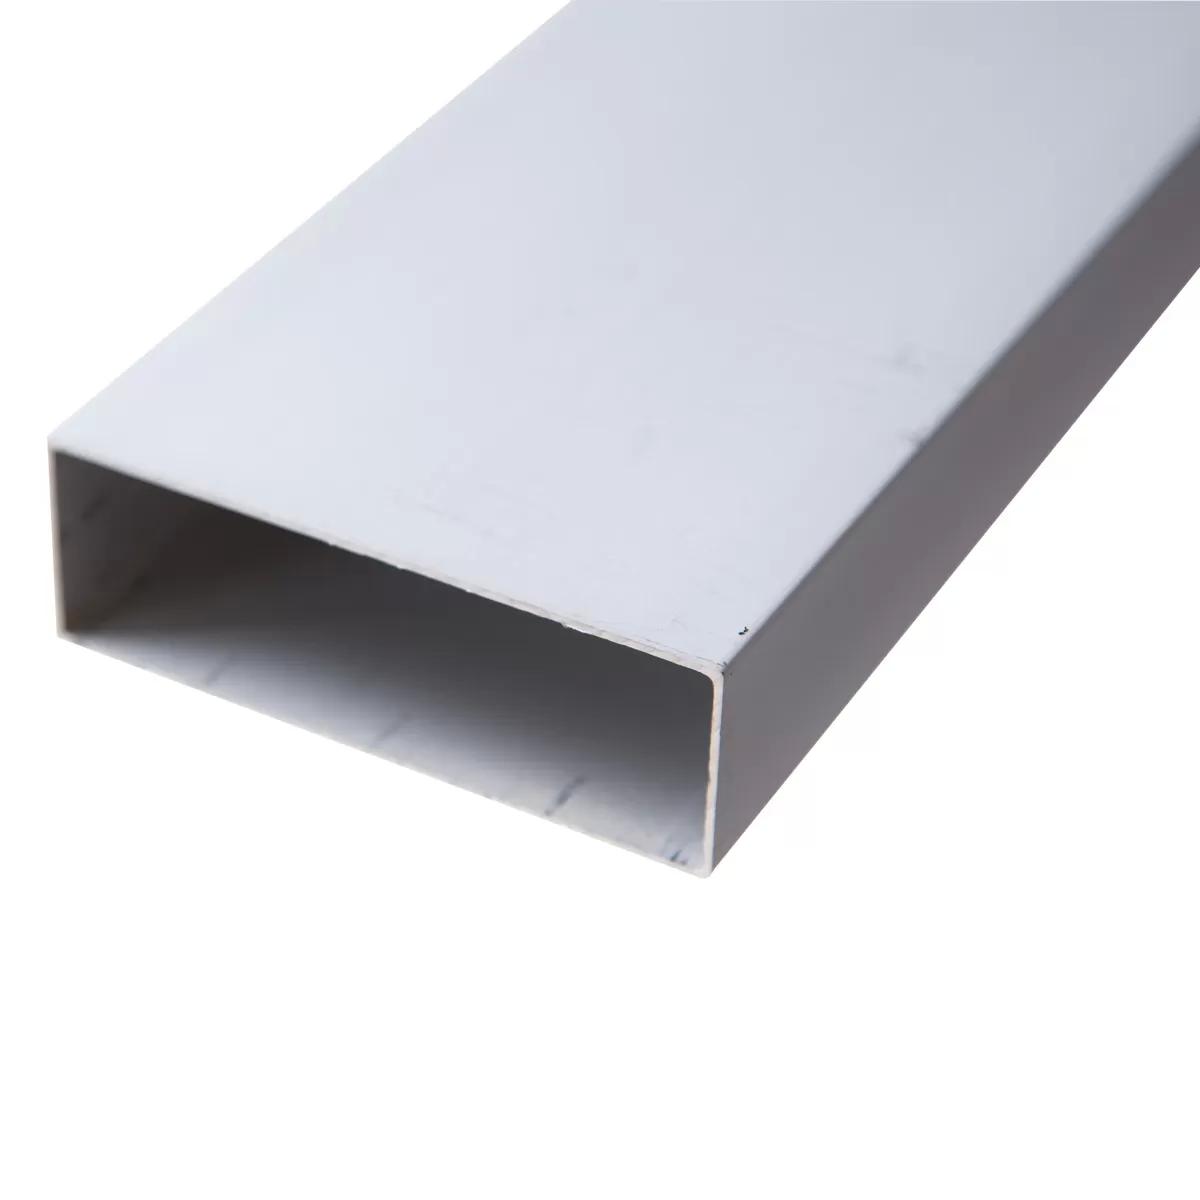 Aluminium bar 5 ft / 1.5m 